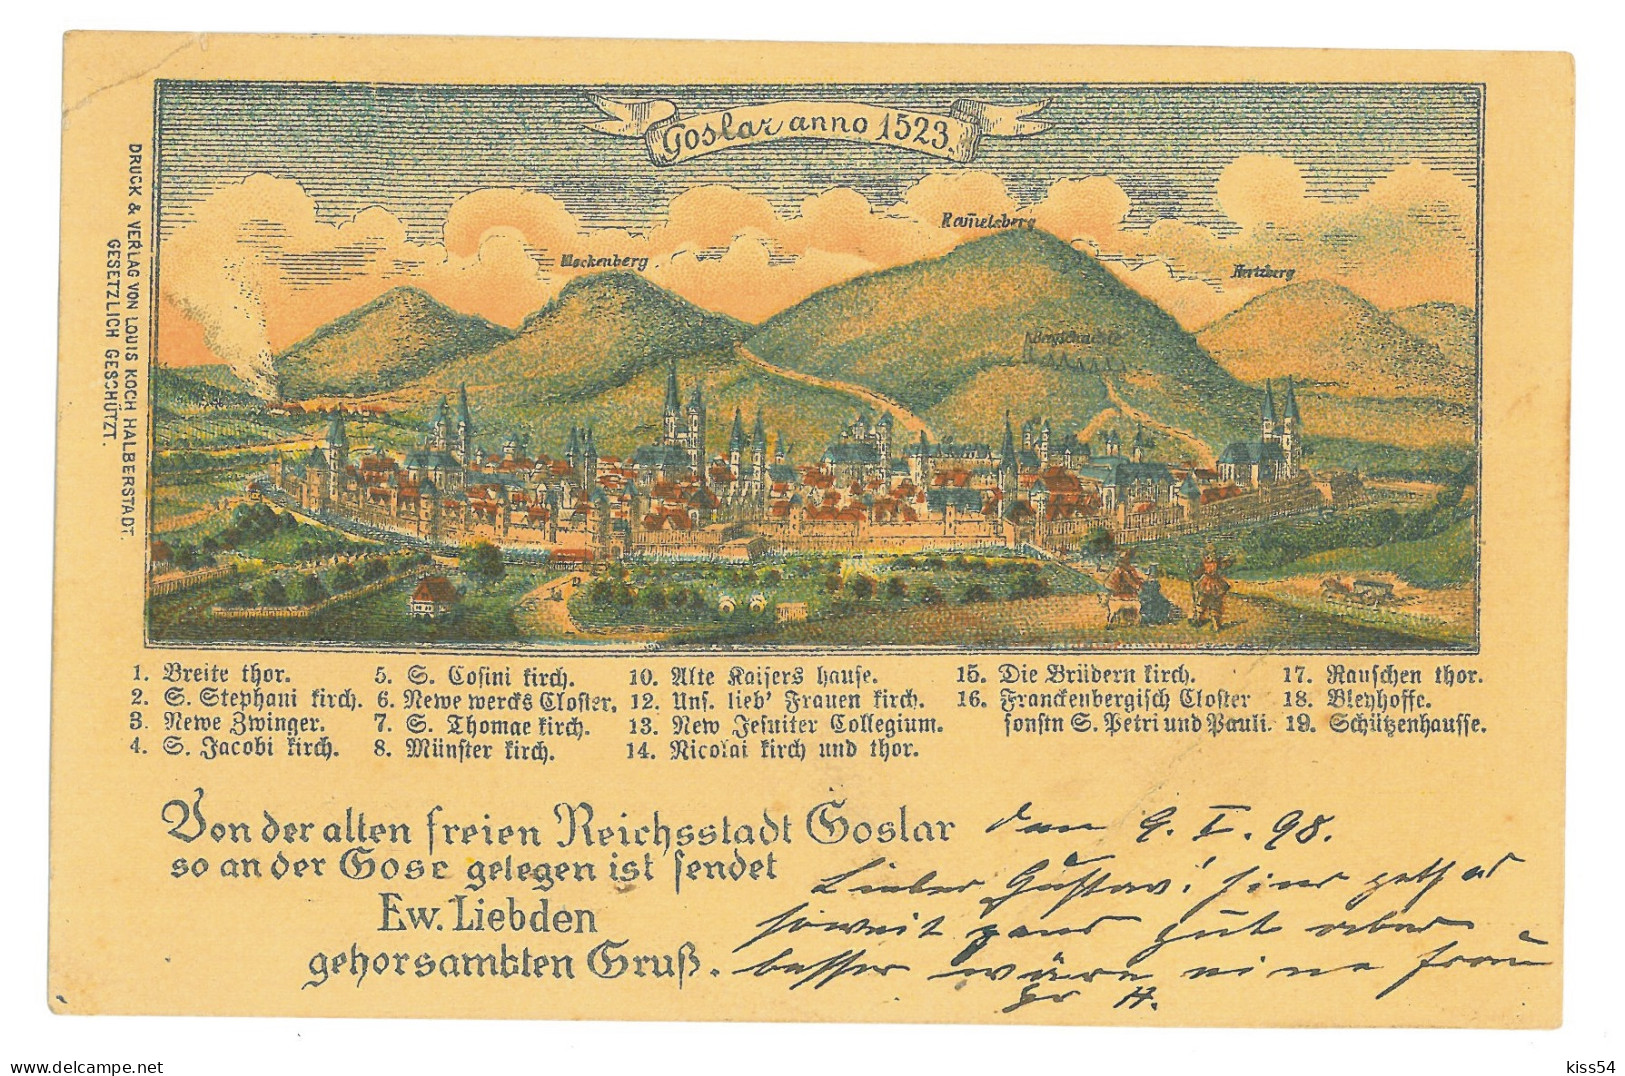 GER 58 - 17207 GOSLAR, Litho, Germany - Old Postcard - Used - 1899 - Goslar